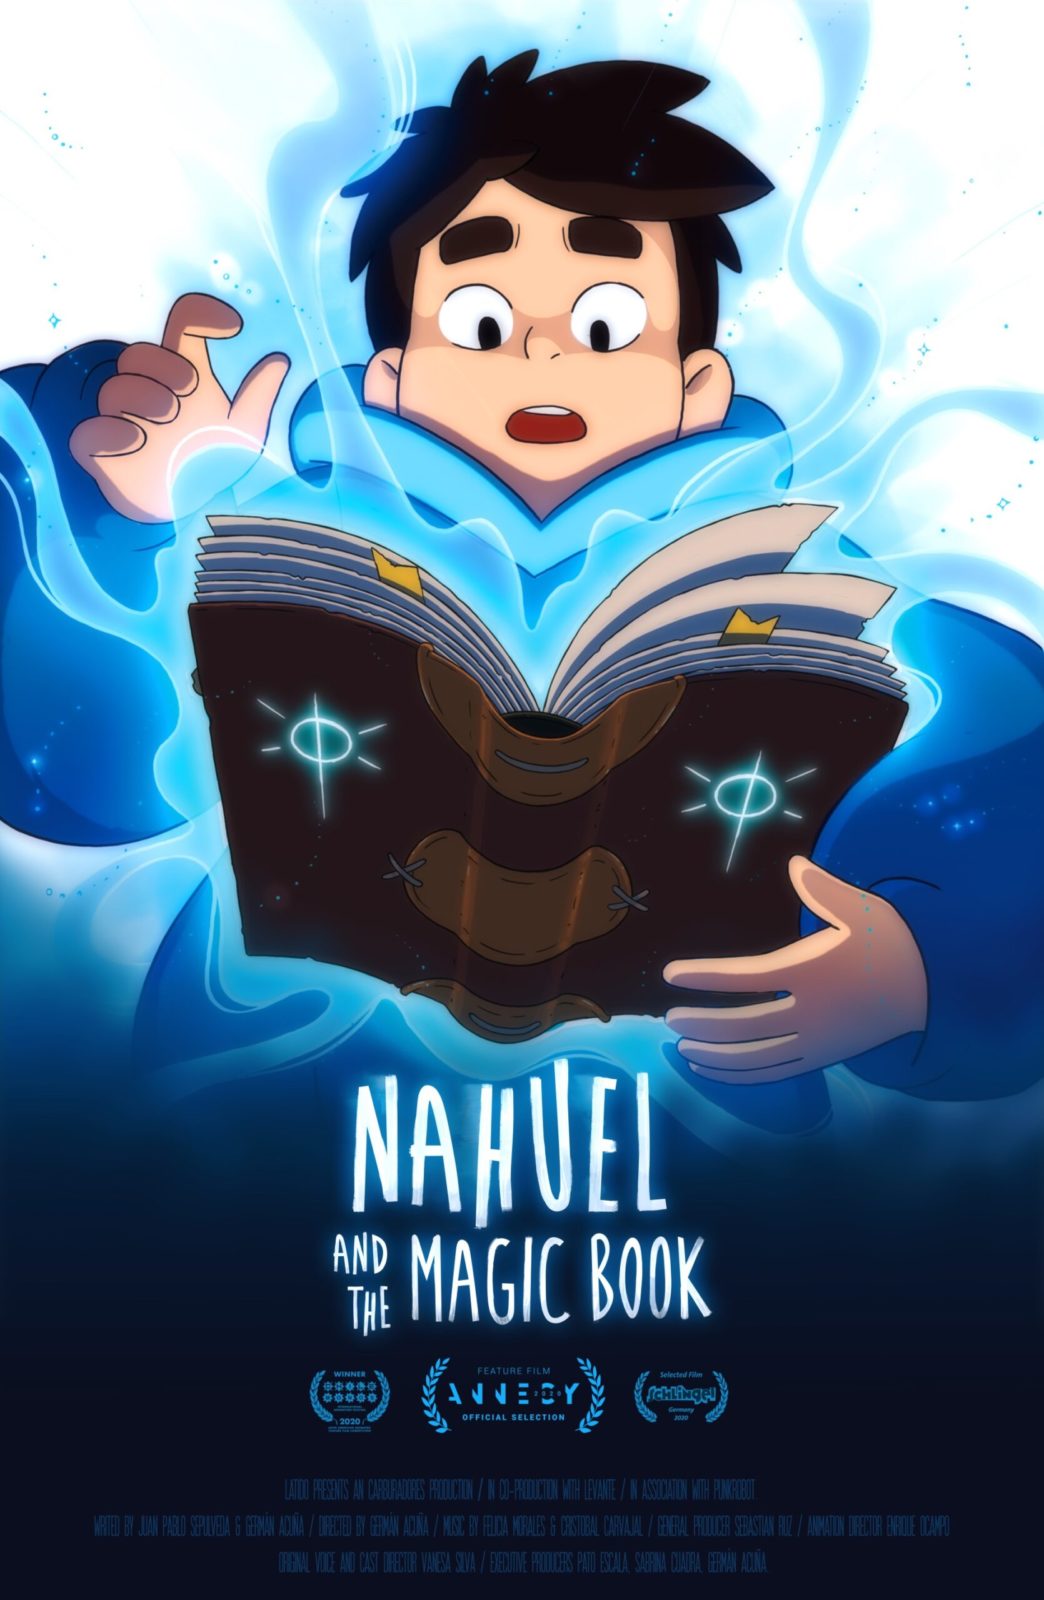 NAHUEL AND THE MAGIC BOOK